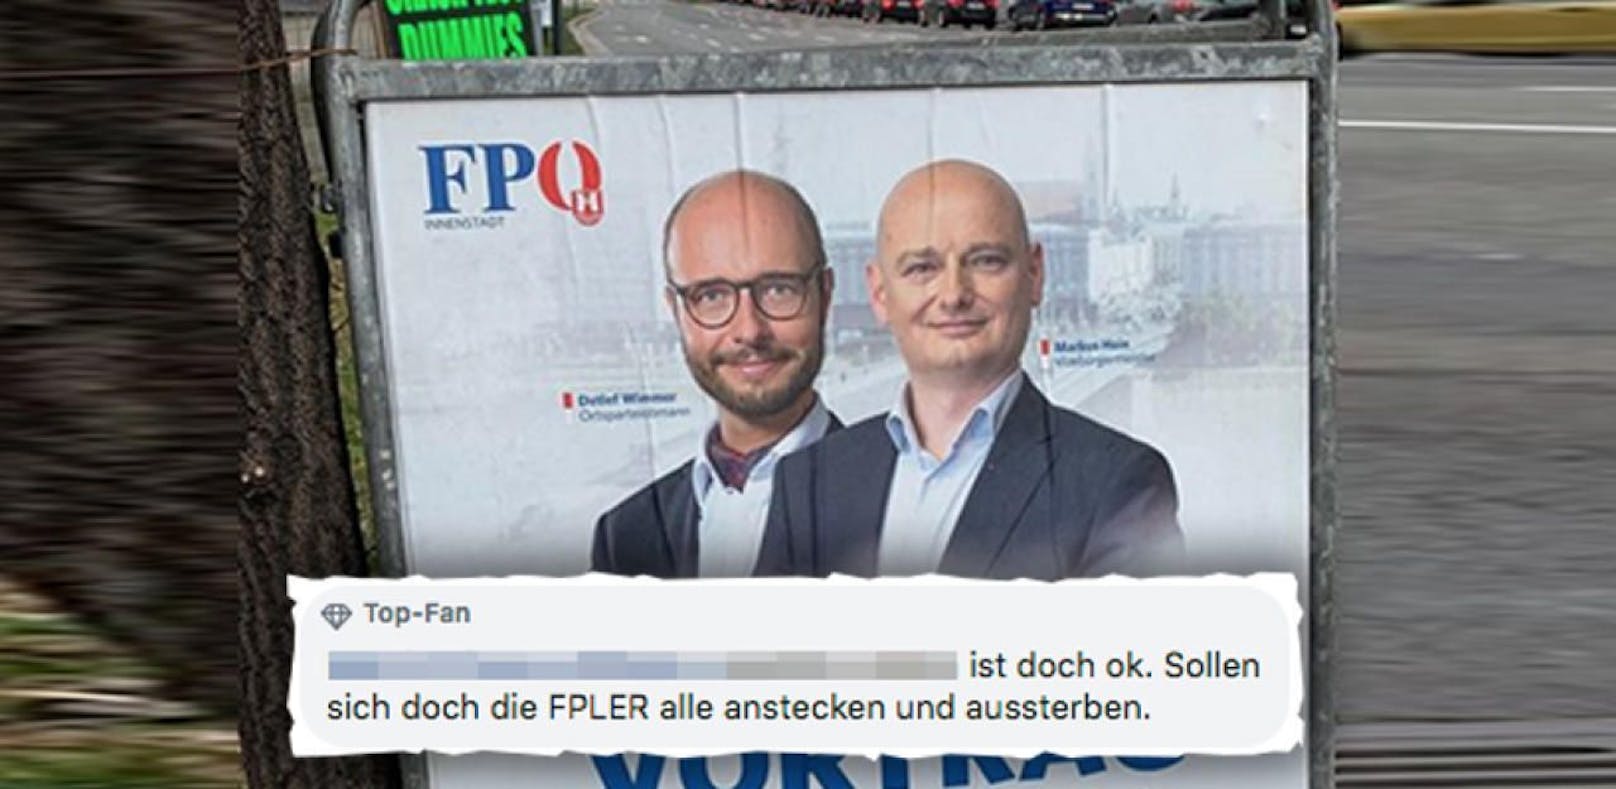 Unter einen Beitrag zu einer FPÖ-Veranstaltung postete der Mann sein geschmackloses Posting.